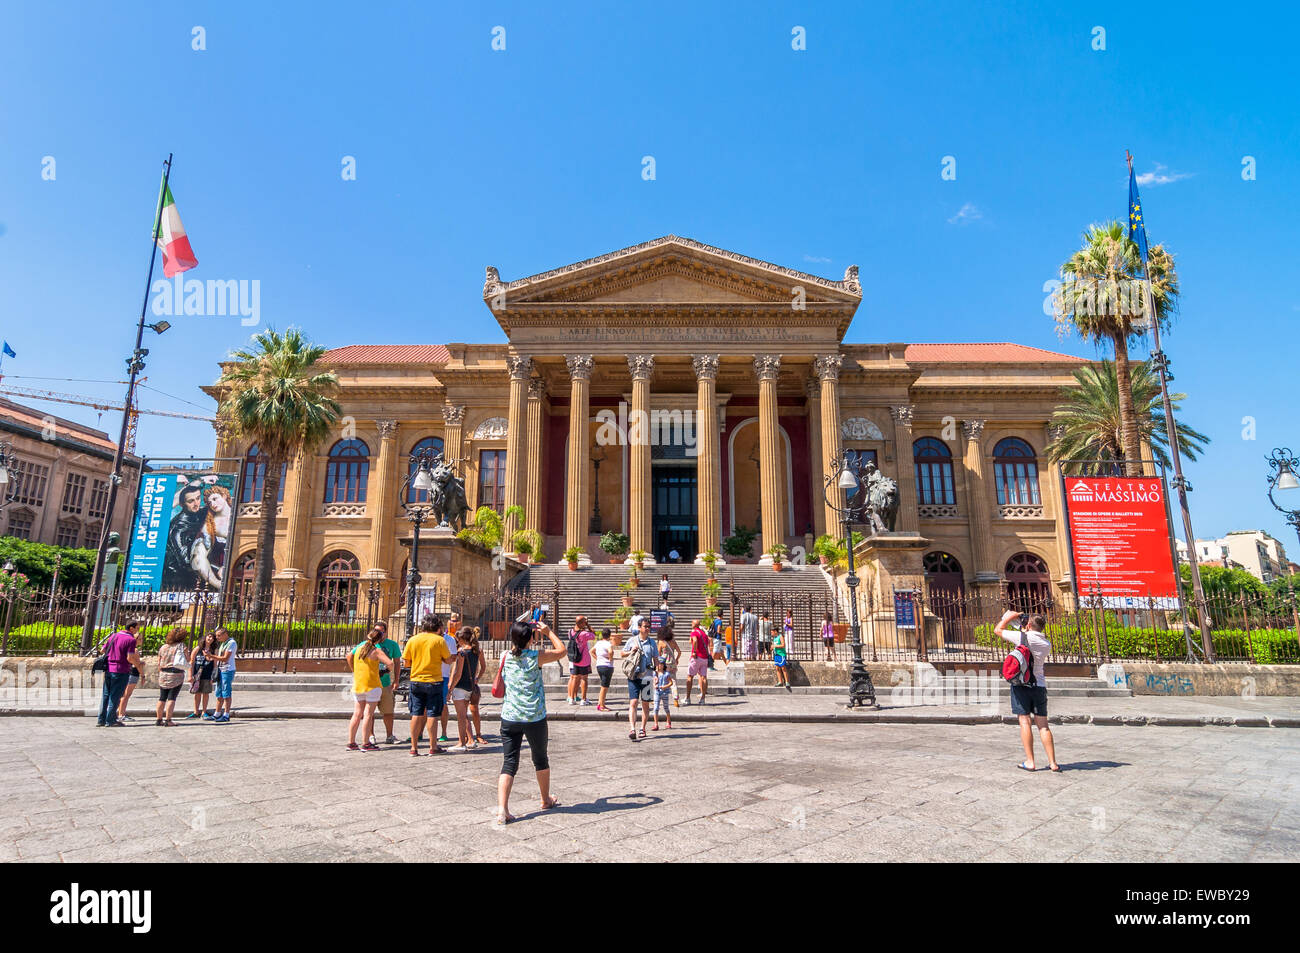 Palerme, Italie - 16 août 2014 : les touristes en face du célèbre opéra Teatro Massimo de Palerme, Sicile, Italie. Banque D'Images